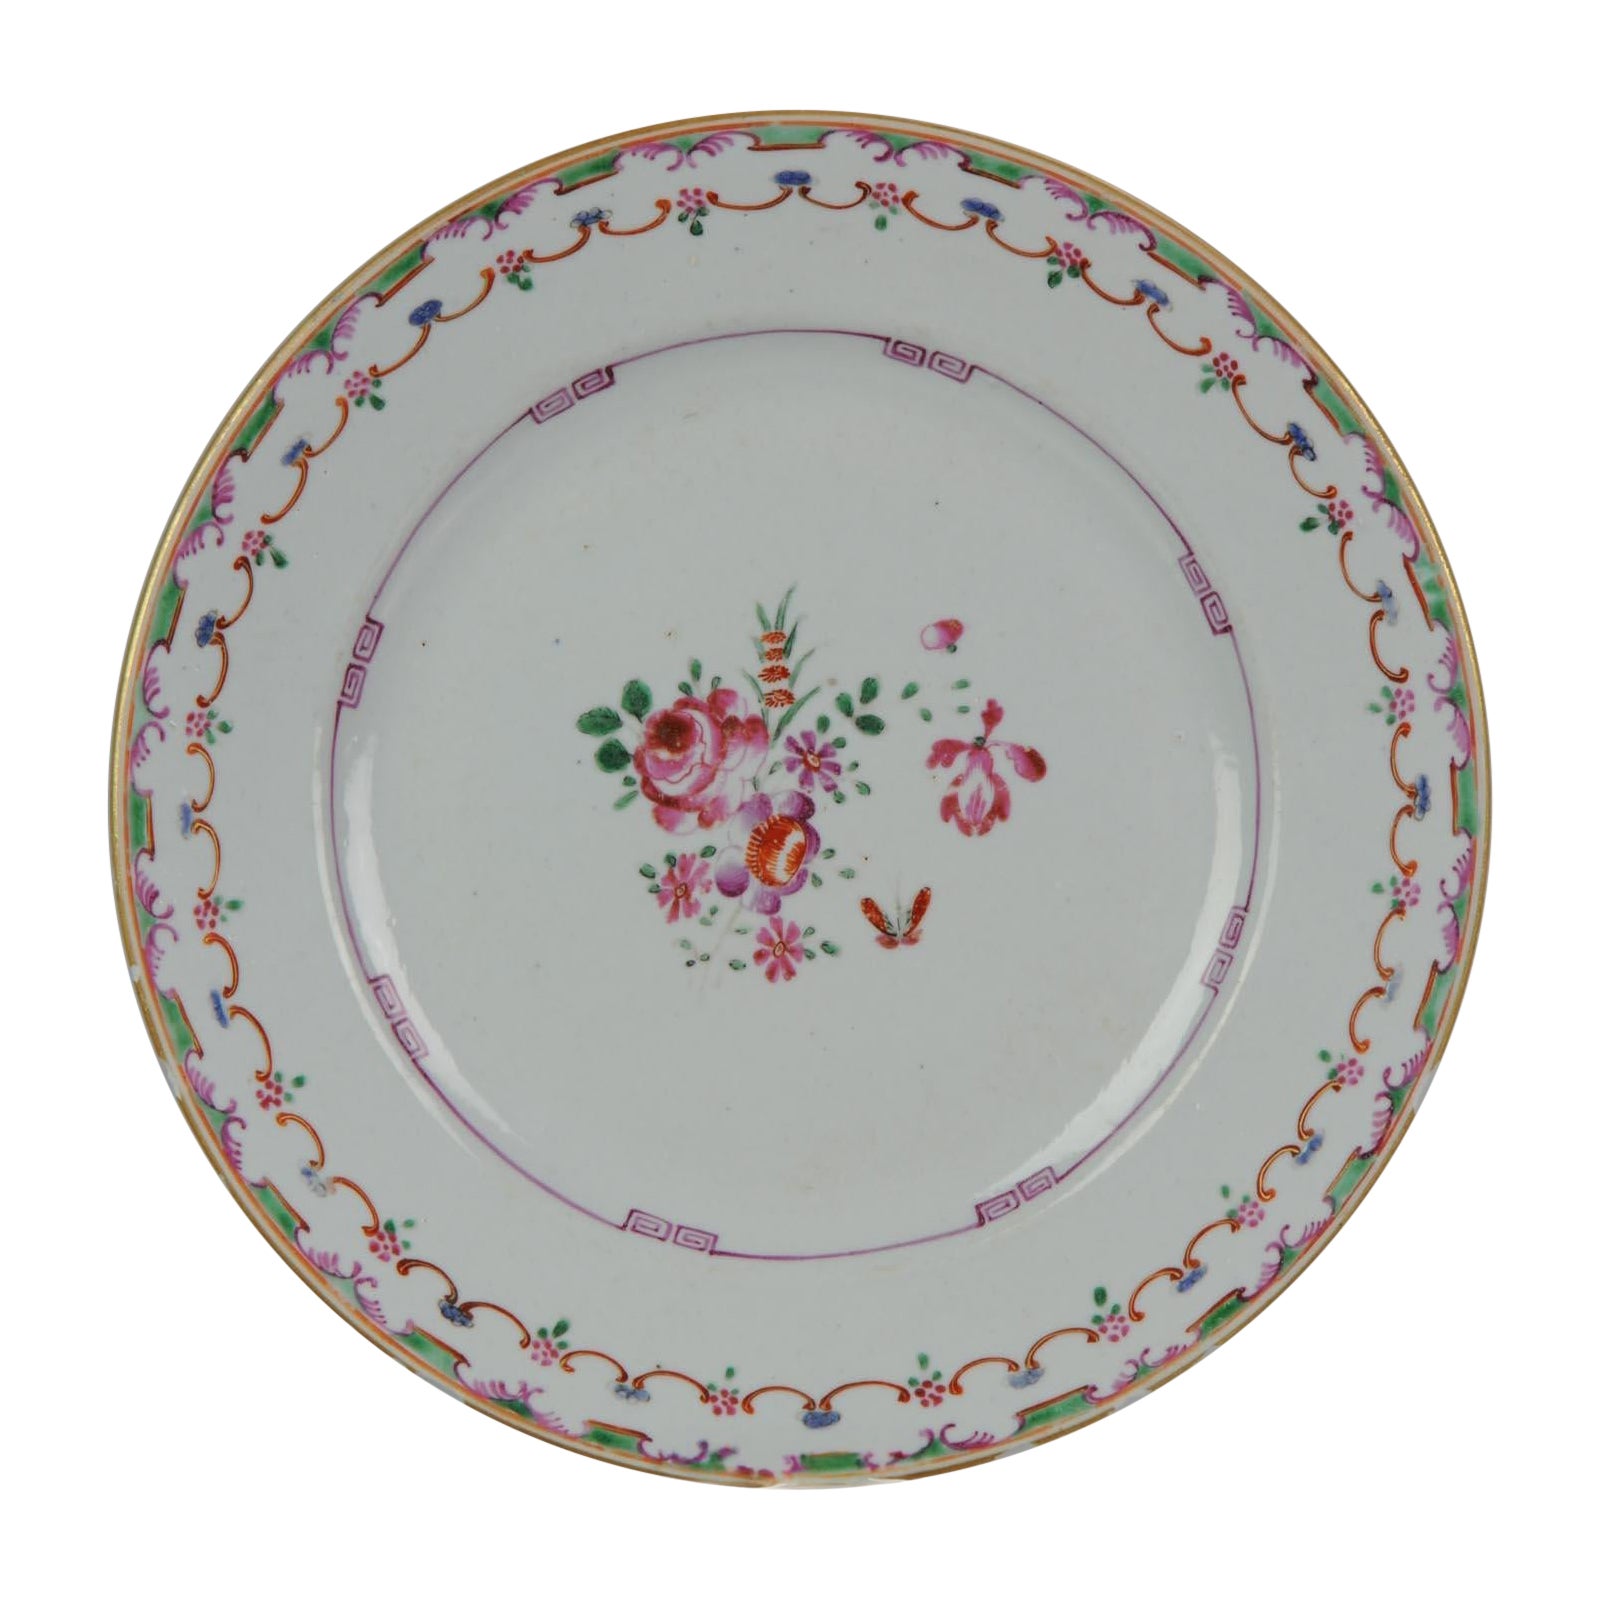 Antique Plate Flowers Fencai Porcelain Famille Rose China Qianlong, 1736-1795 For Sale